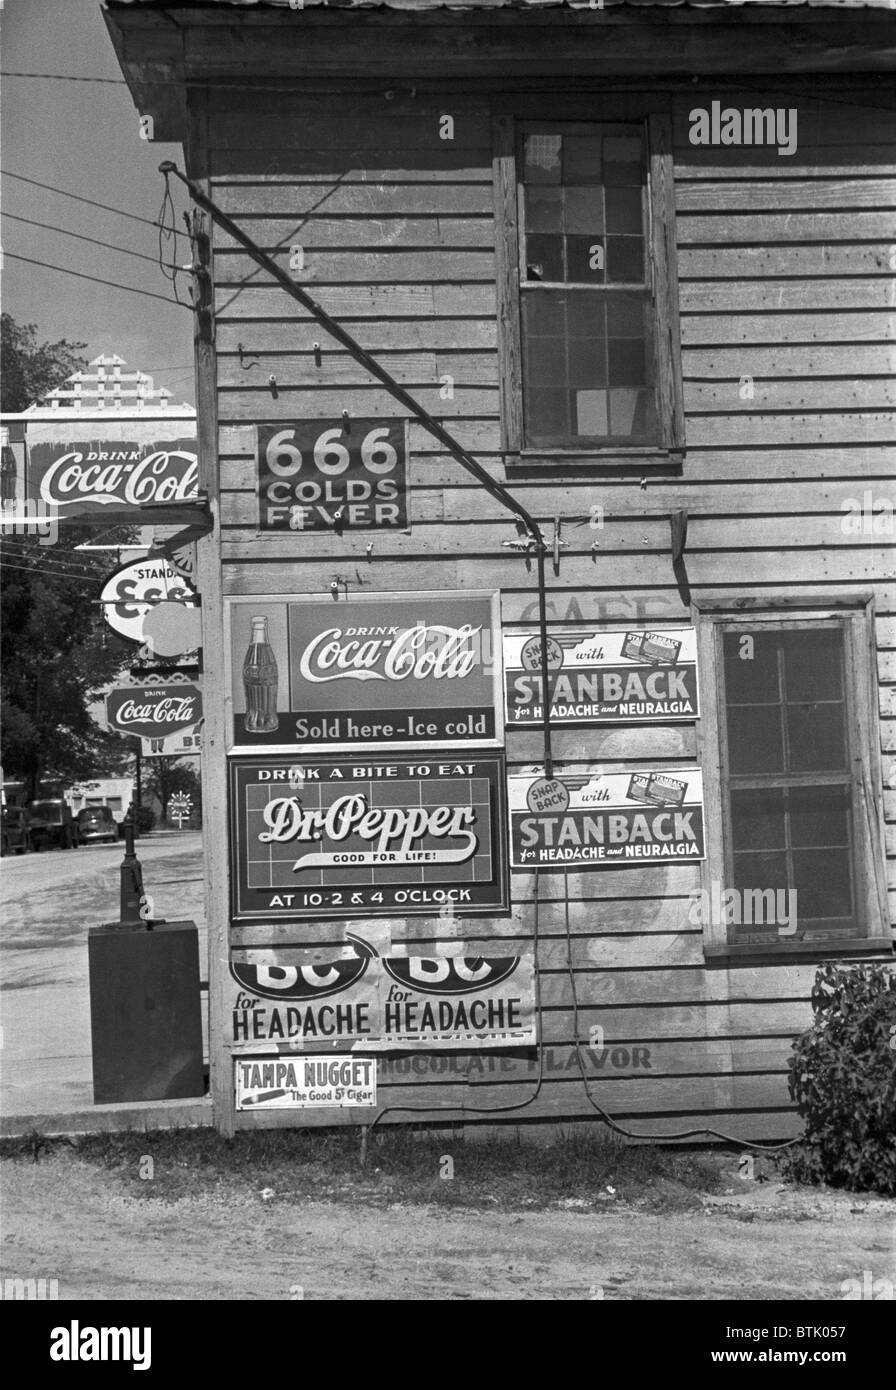 Seite eines Ladens, Werbeschilder, einschließlich 666 Erkältungsmittel, Dr. Pepper, Coca-Cola, Esso Benzin, Halifax, North Carolina, Foto von John Vachon, April 1938 zeigt. Stockfoto